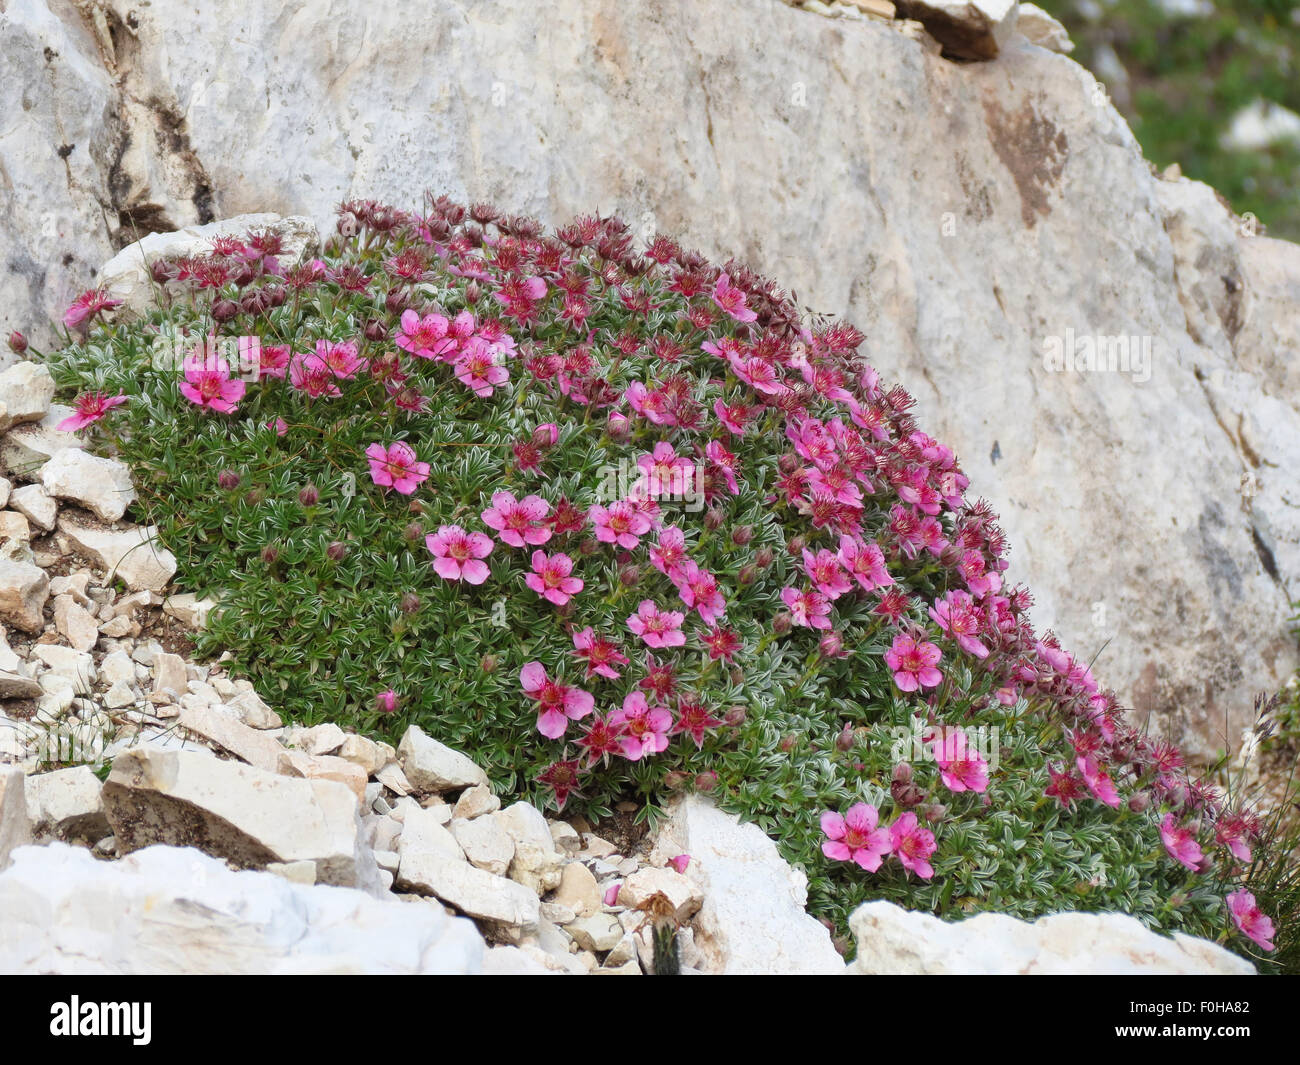 Potentilla nitida. Cinquefoglia delle Dolomiti. Alpine flowers in the Dolomites. Stock Photo